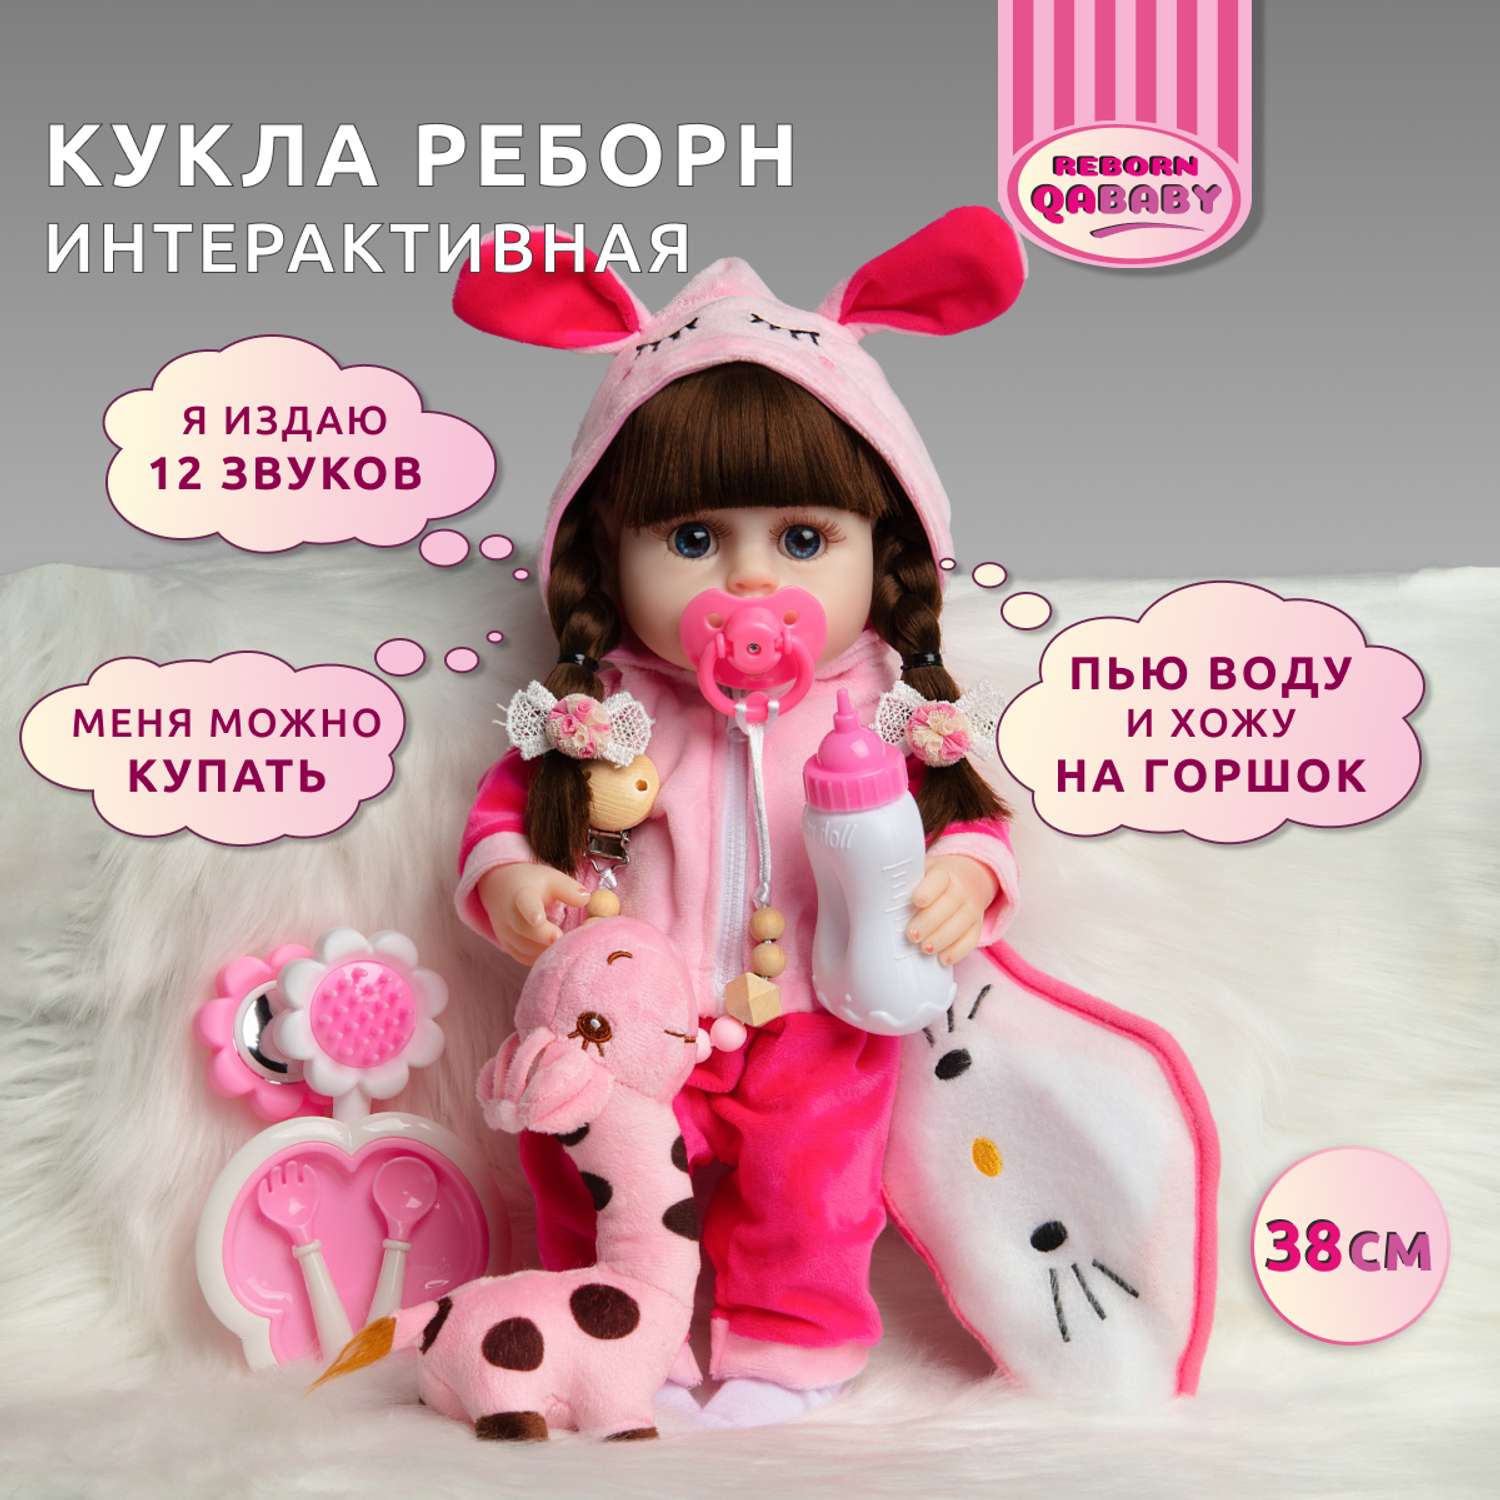 Курсы по изготовлению кукол в Москве. Обучение изготовлению кукол – Школа Кукольного дизайна